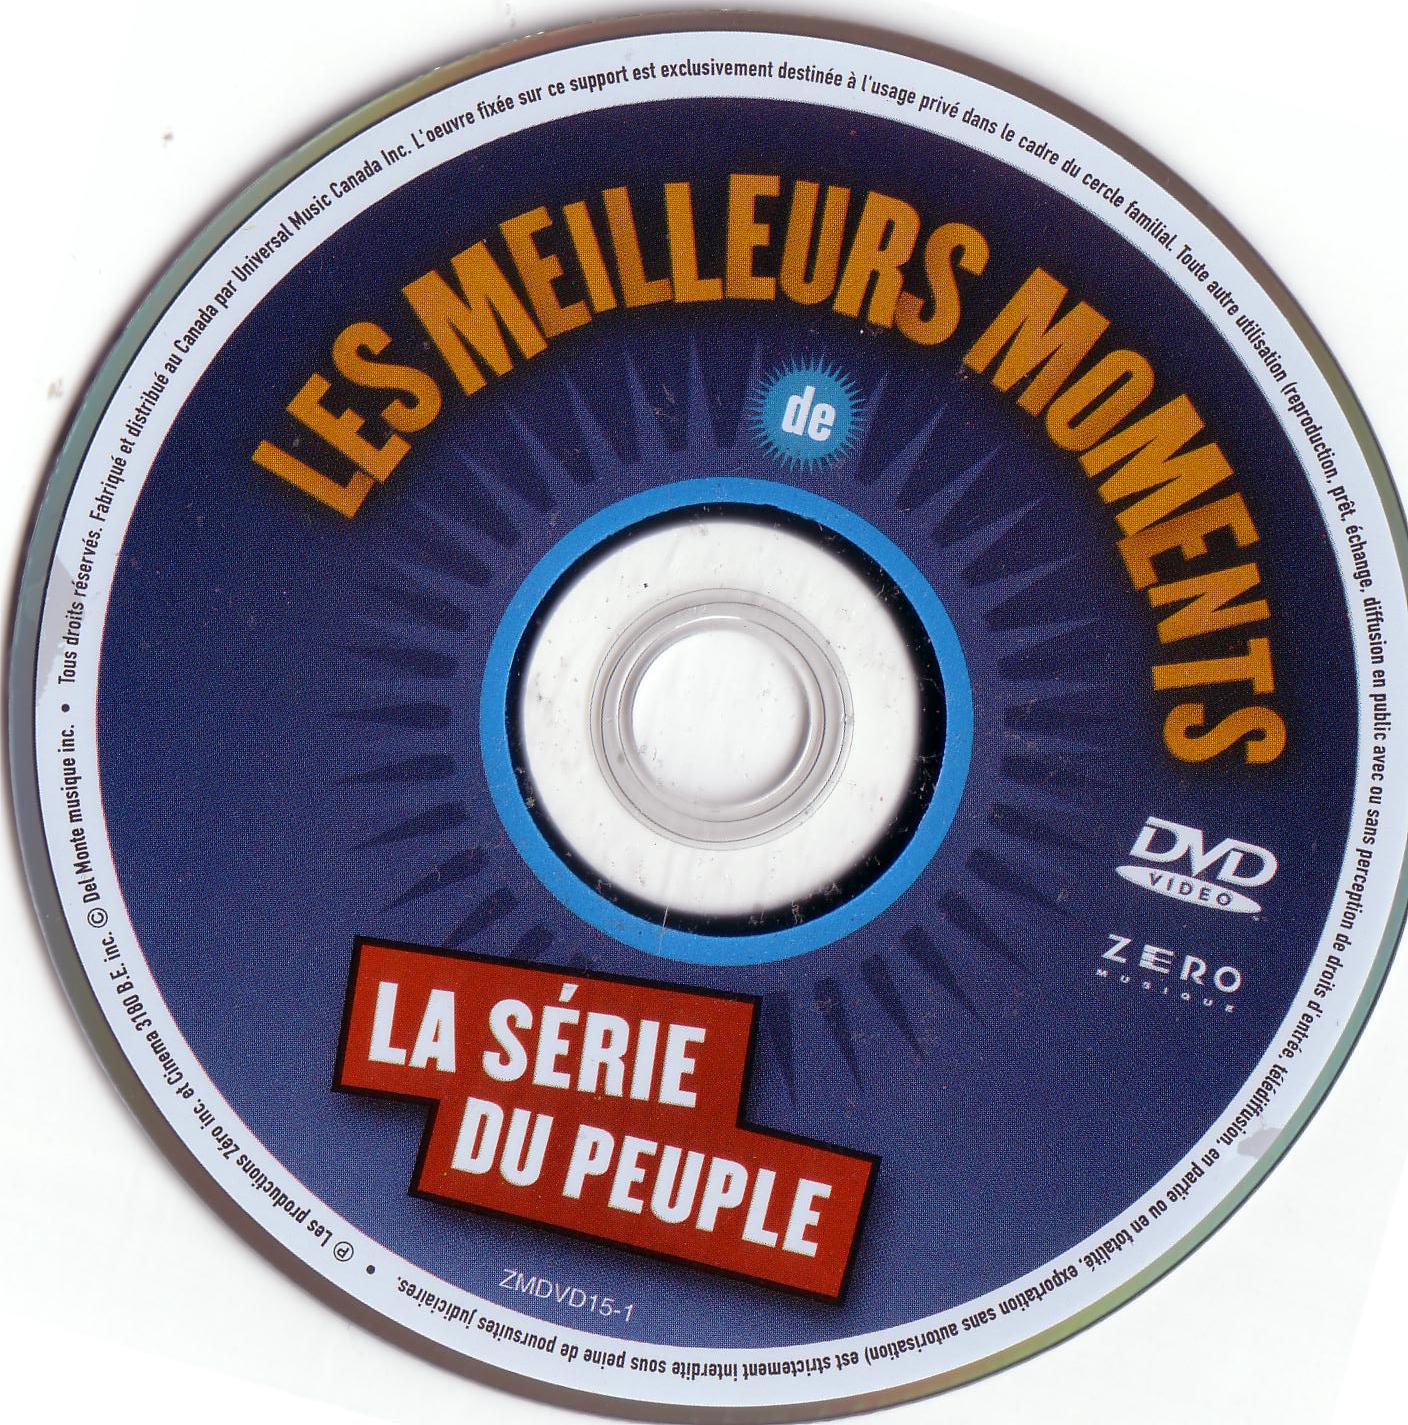 Album du peuple (disc 2)